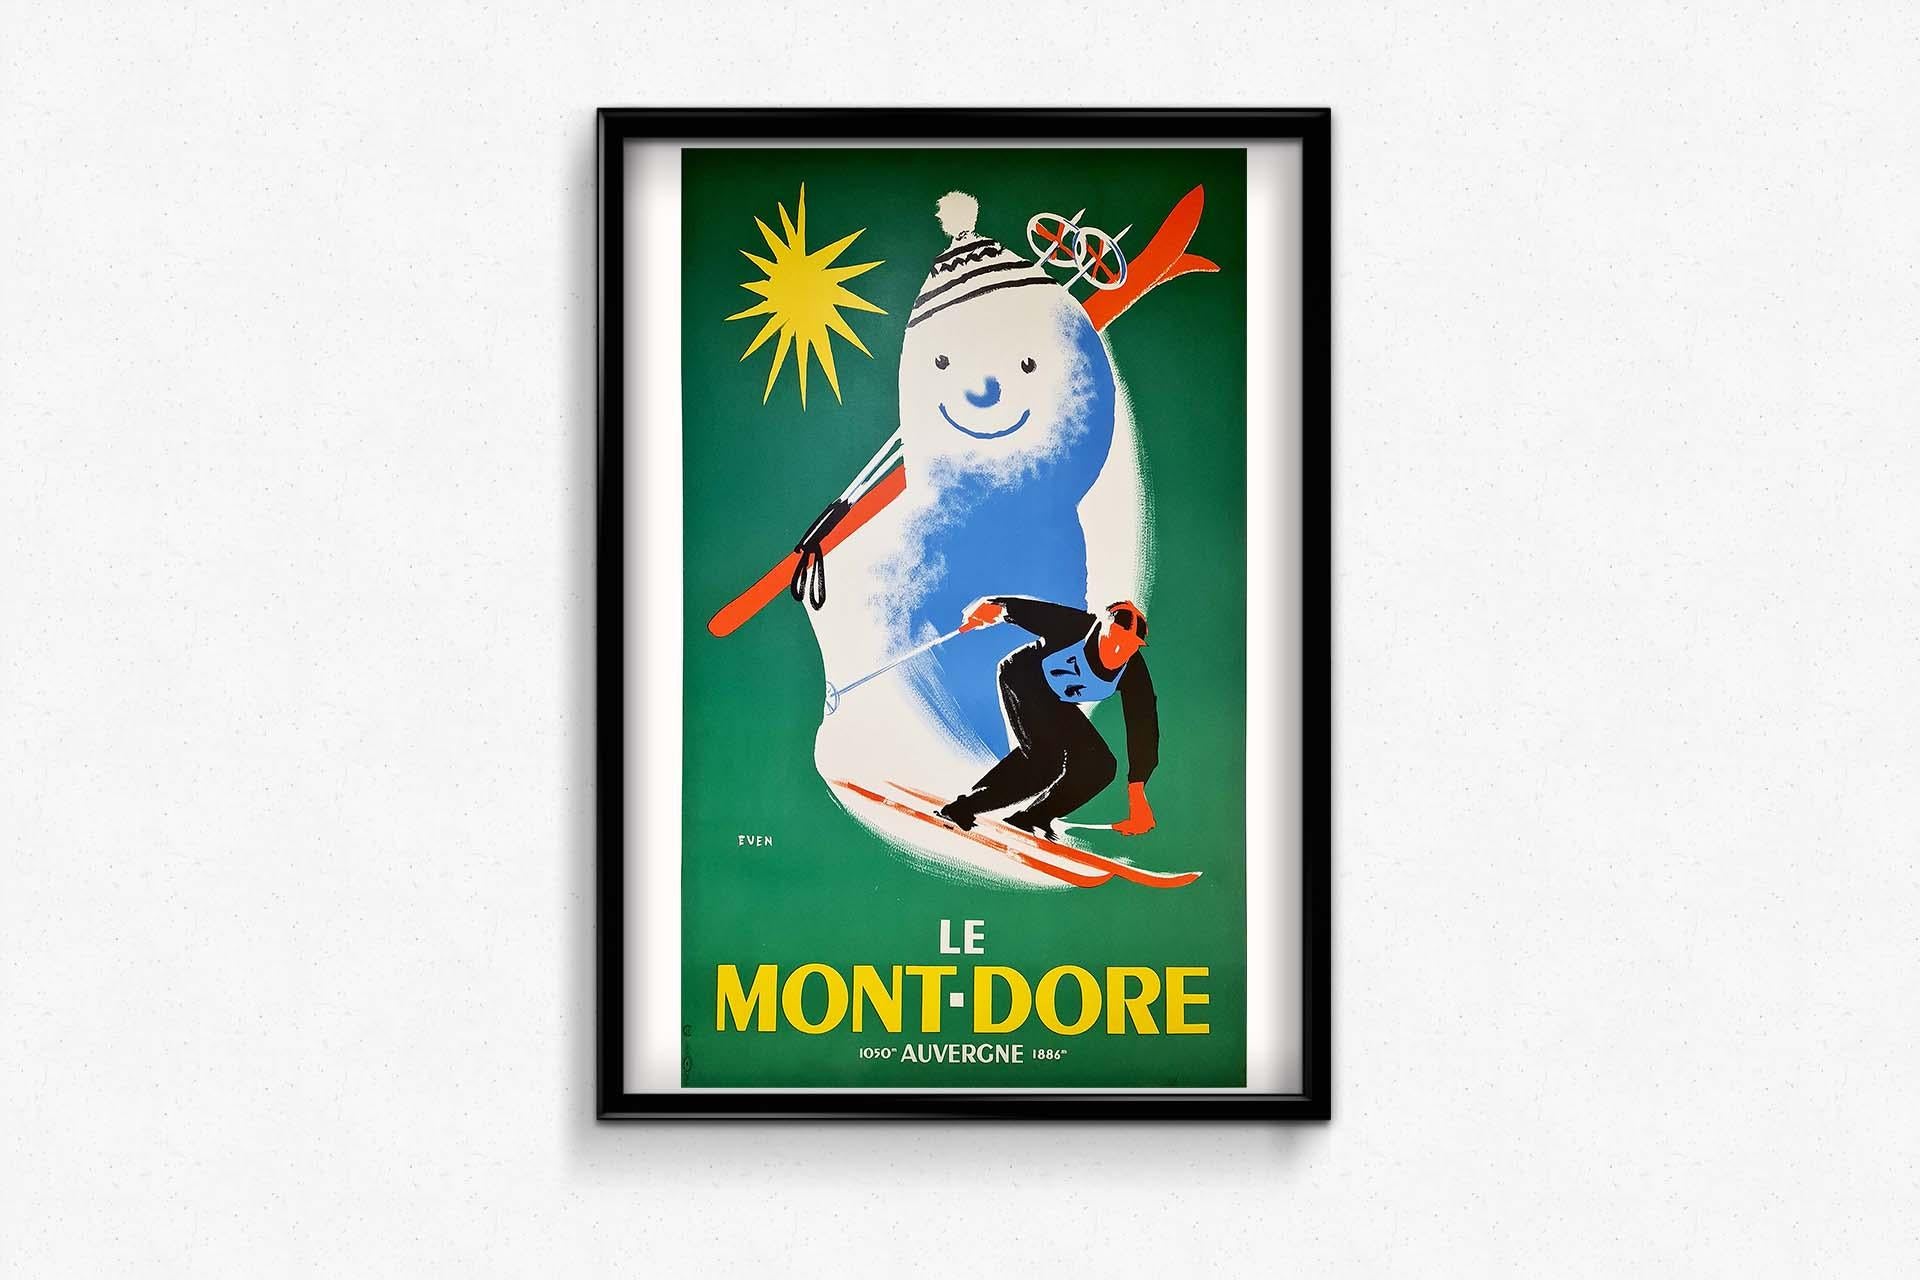 Le Mont-Dore 1050 mètres 1886 mètres Circa 1940 Original Poster Tourism Auvergne For Sale 1